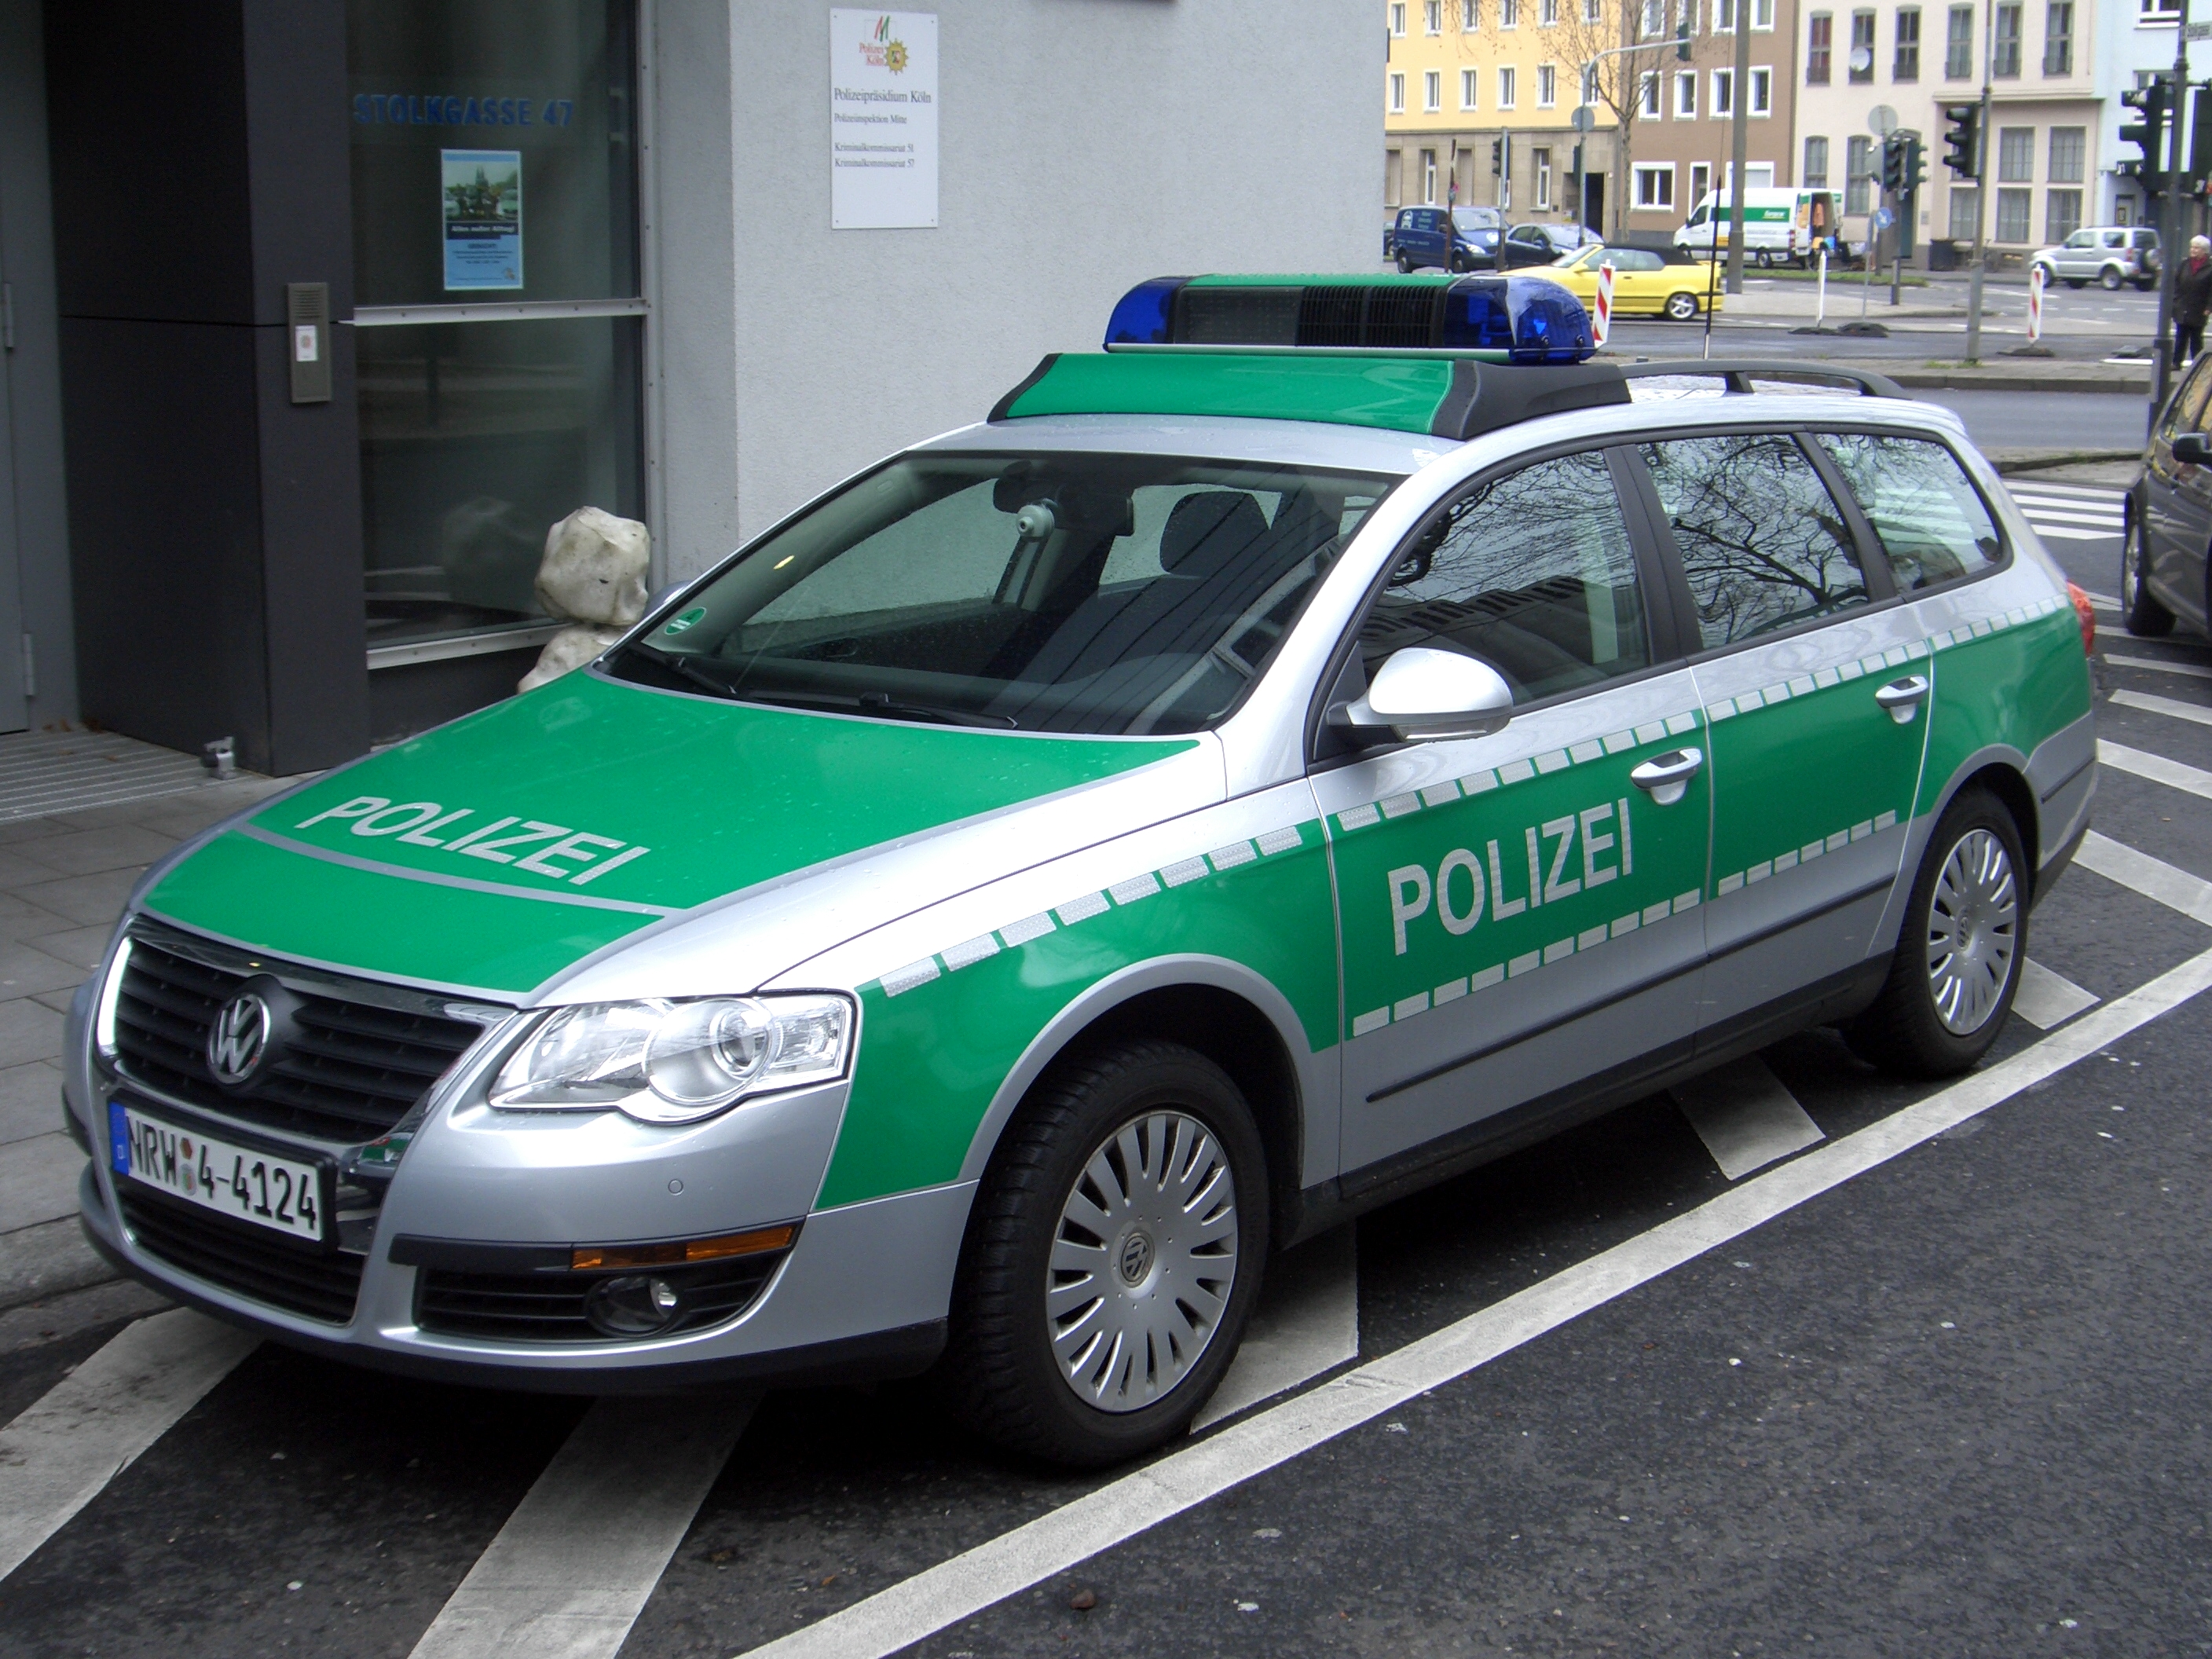 Зеленая полицейская машина. Фольксваген Пассат полиция Германии. VW Passat Police. Volkswagen Passat полиция. VW Polizei.